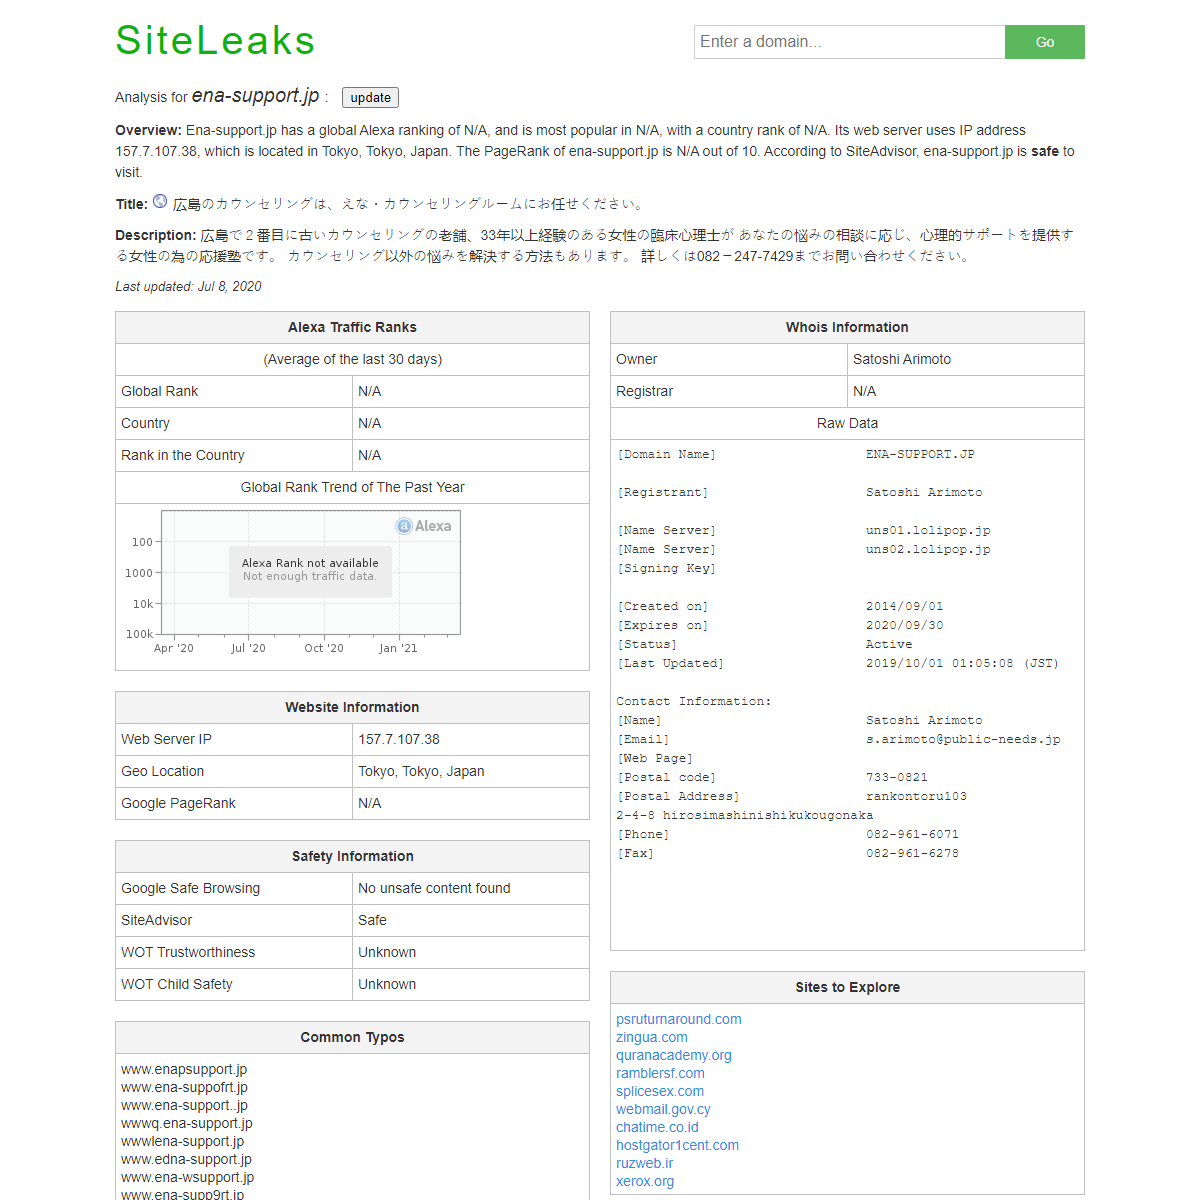 A complete backup of https://www.siteleaks.com/www.ena-support.jp